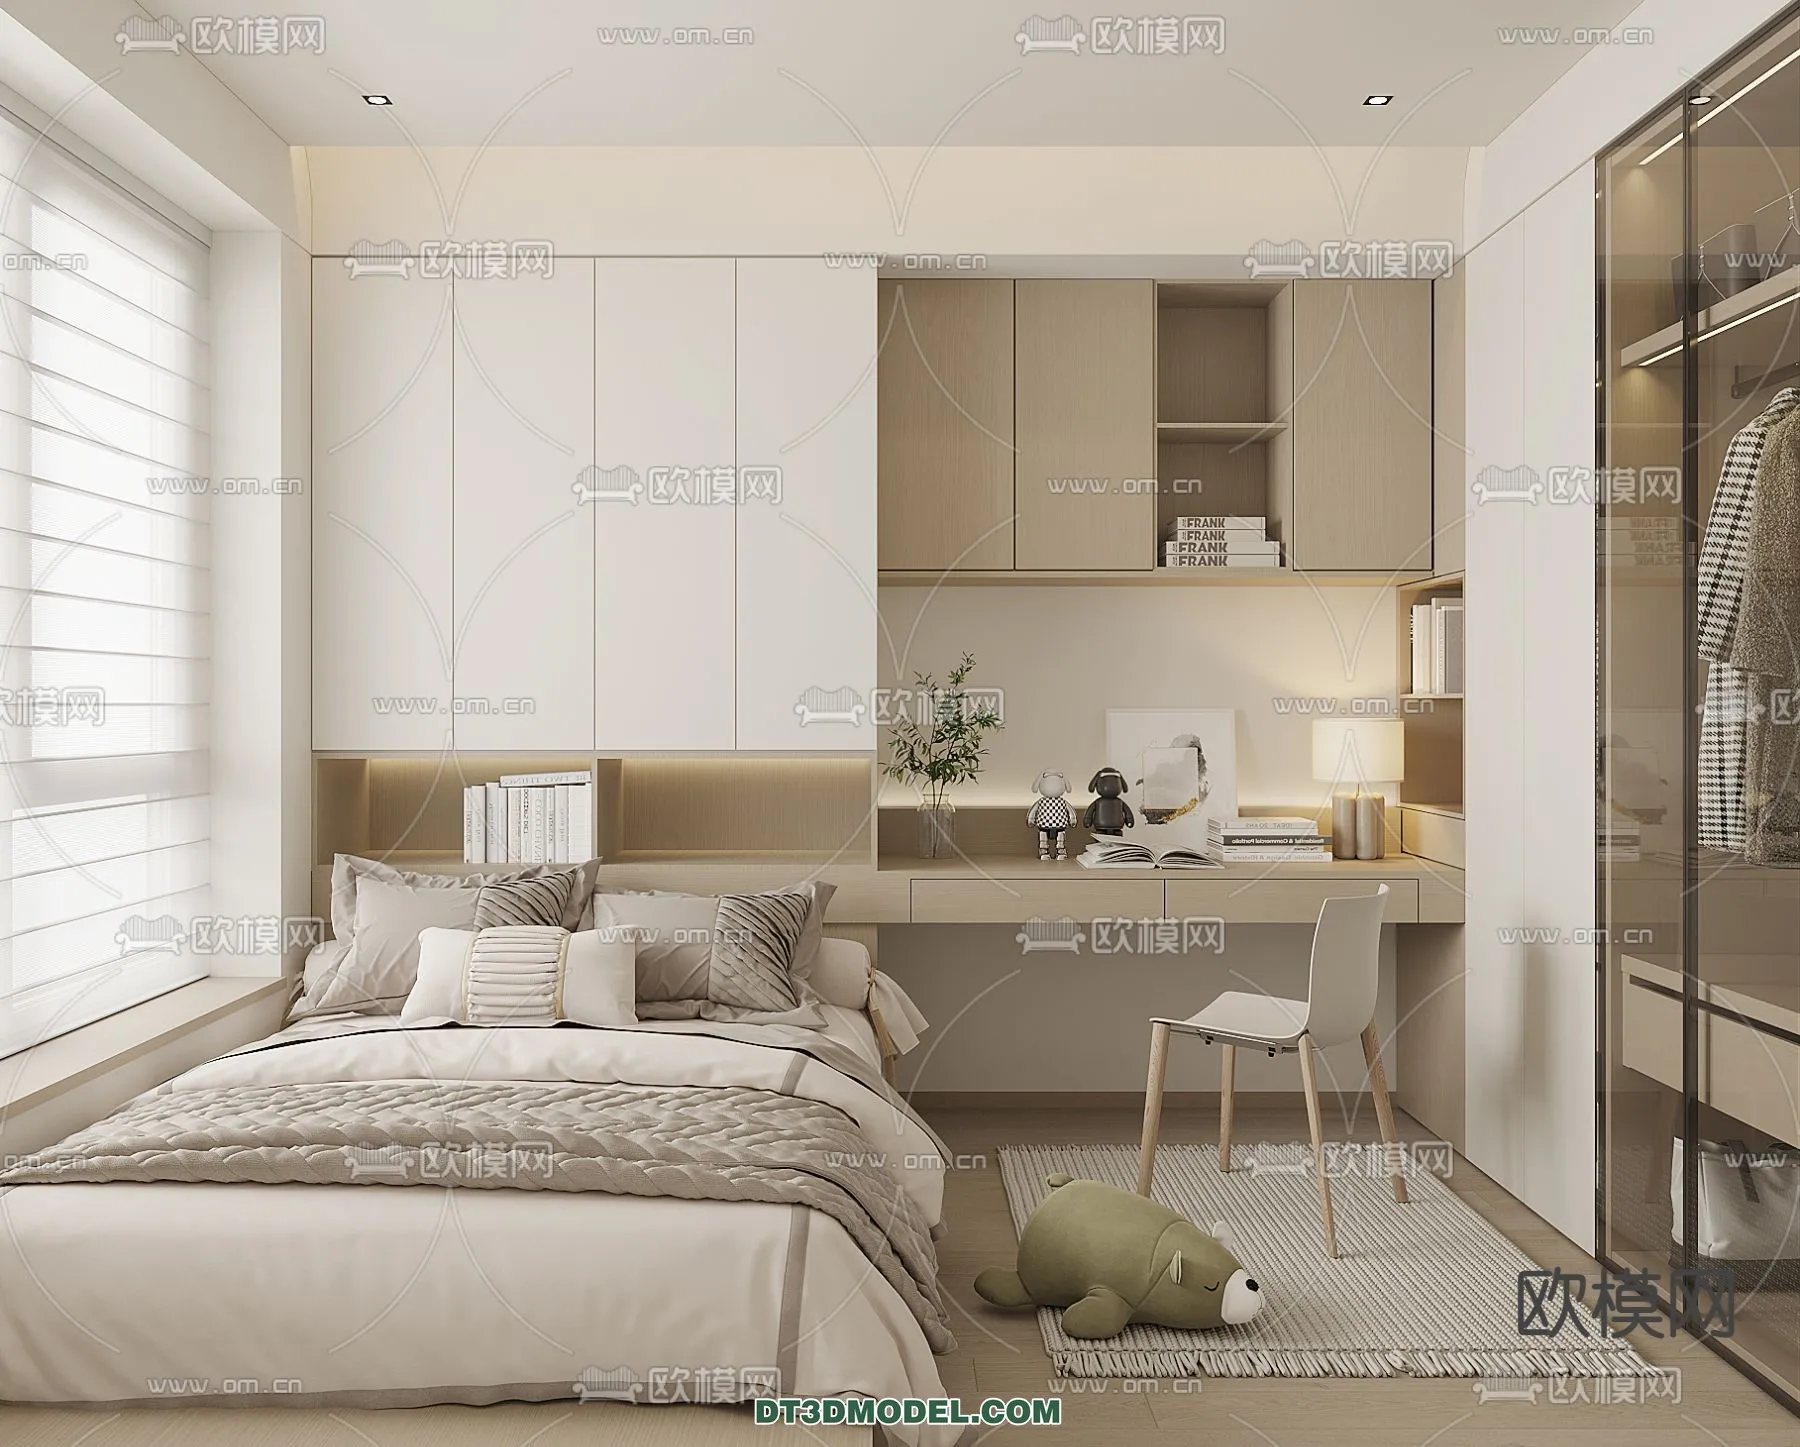 Tatami Bedroom – Japan Bedroom – 3D Scene – 084